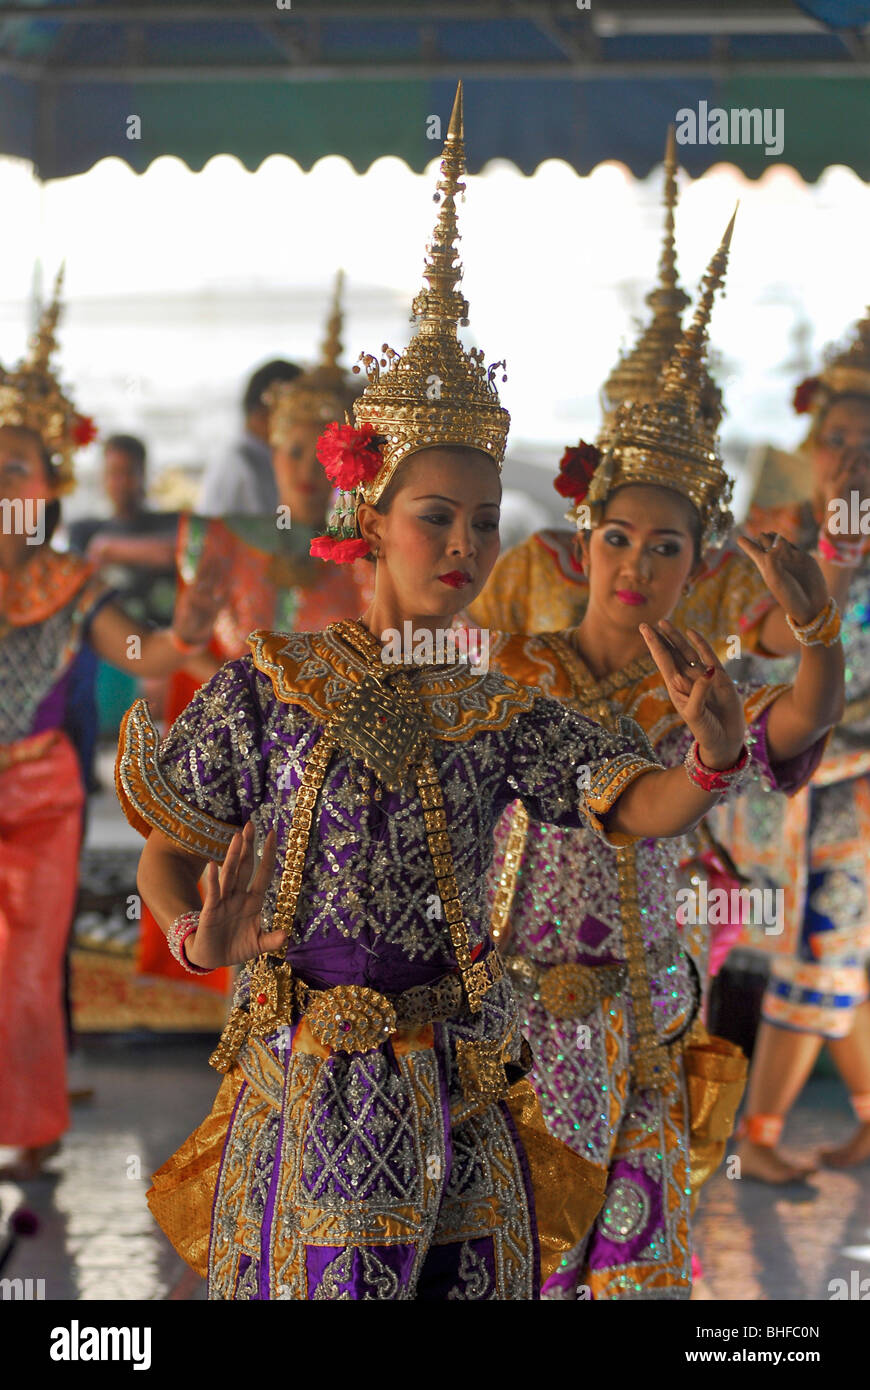 Les femmes qui exécutent la danse, temple Wat Rakhang, Thonburi, Bangkok, Thailande, Asie Banque D'Images